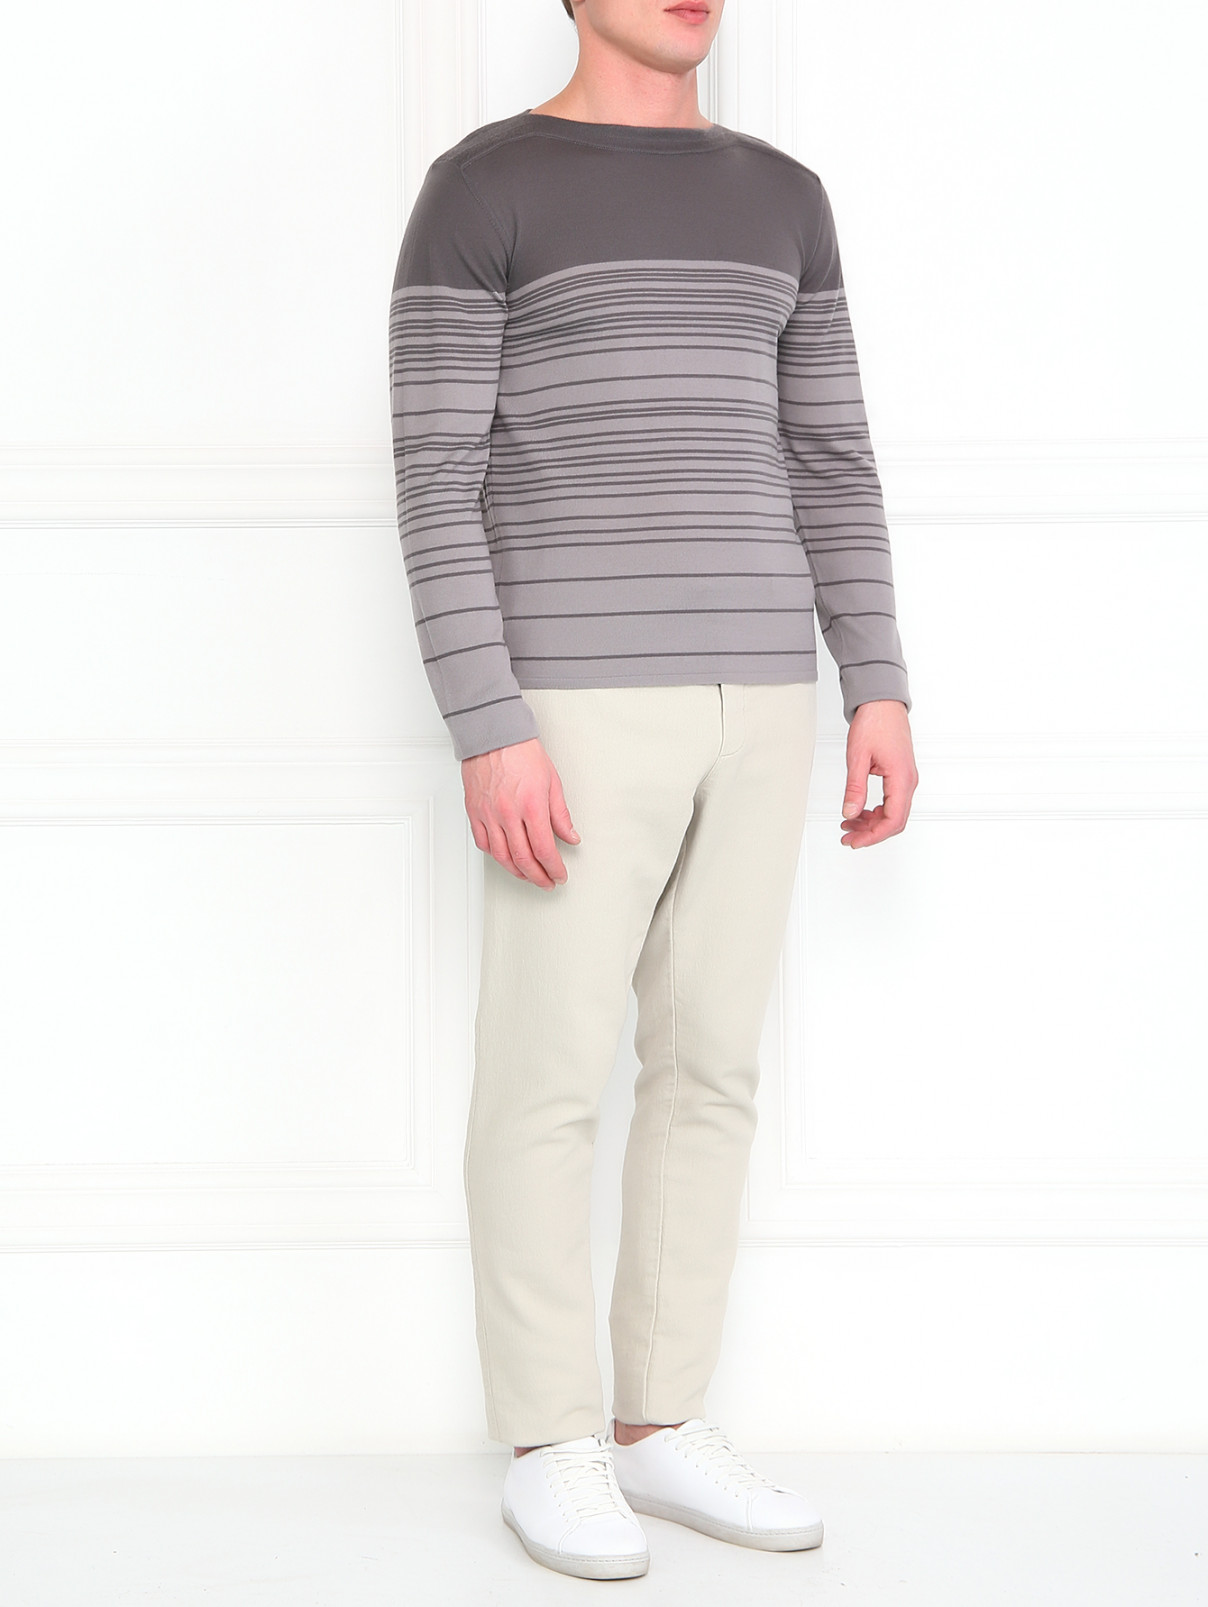 Джемпер из шерсти с узором "полоска" Emporio Armani  –  Модель Общий вид  – Цвет:  Серый